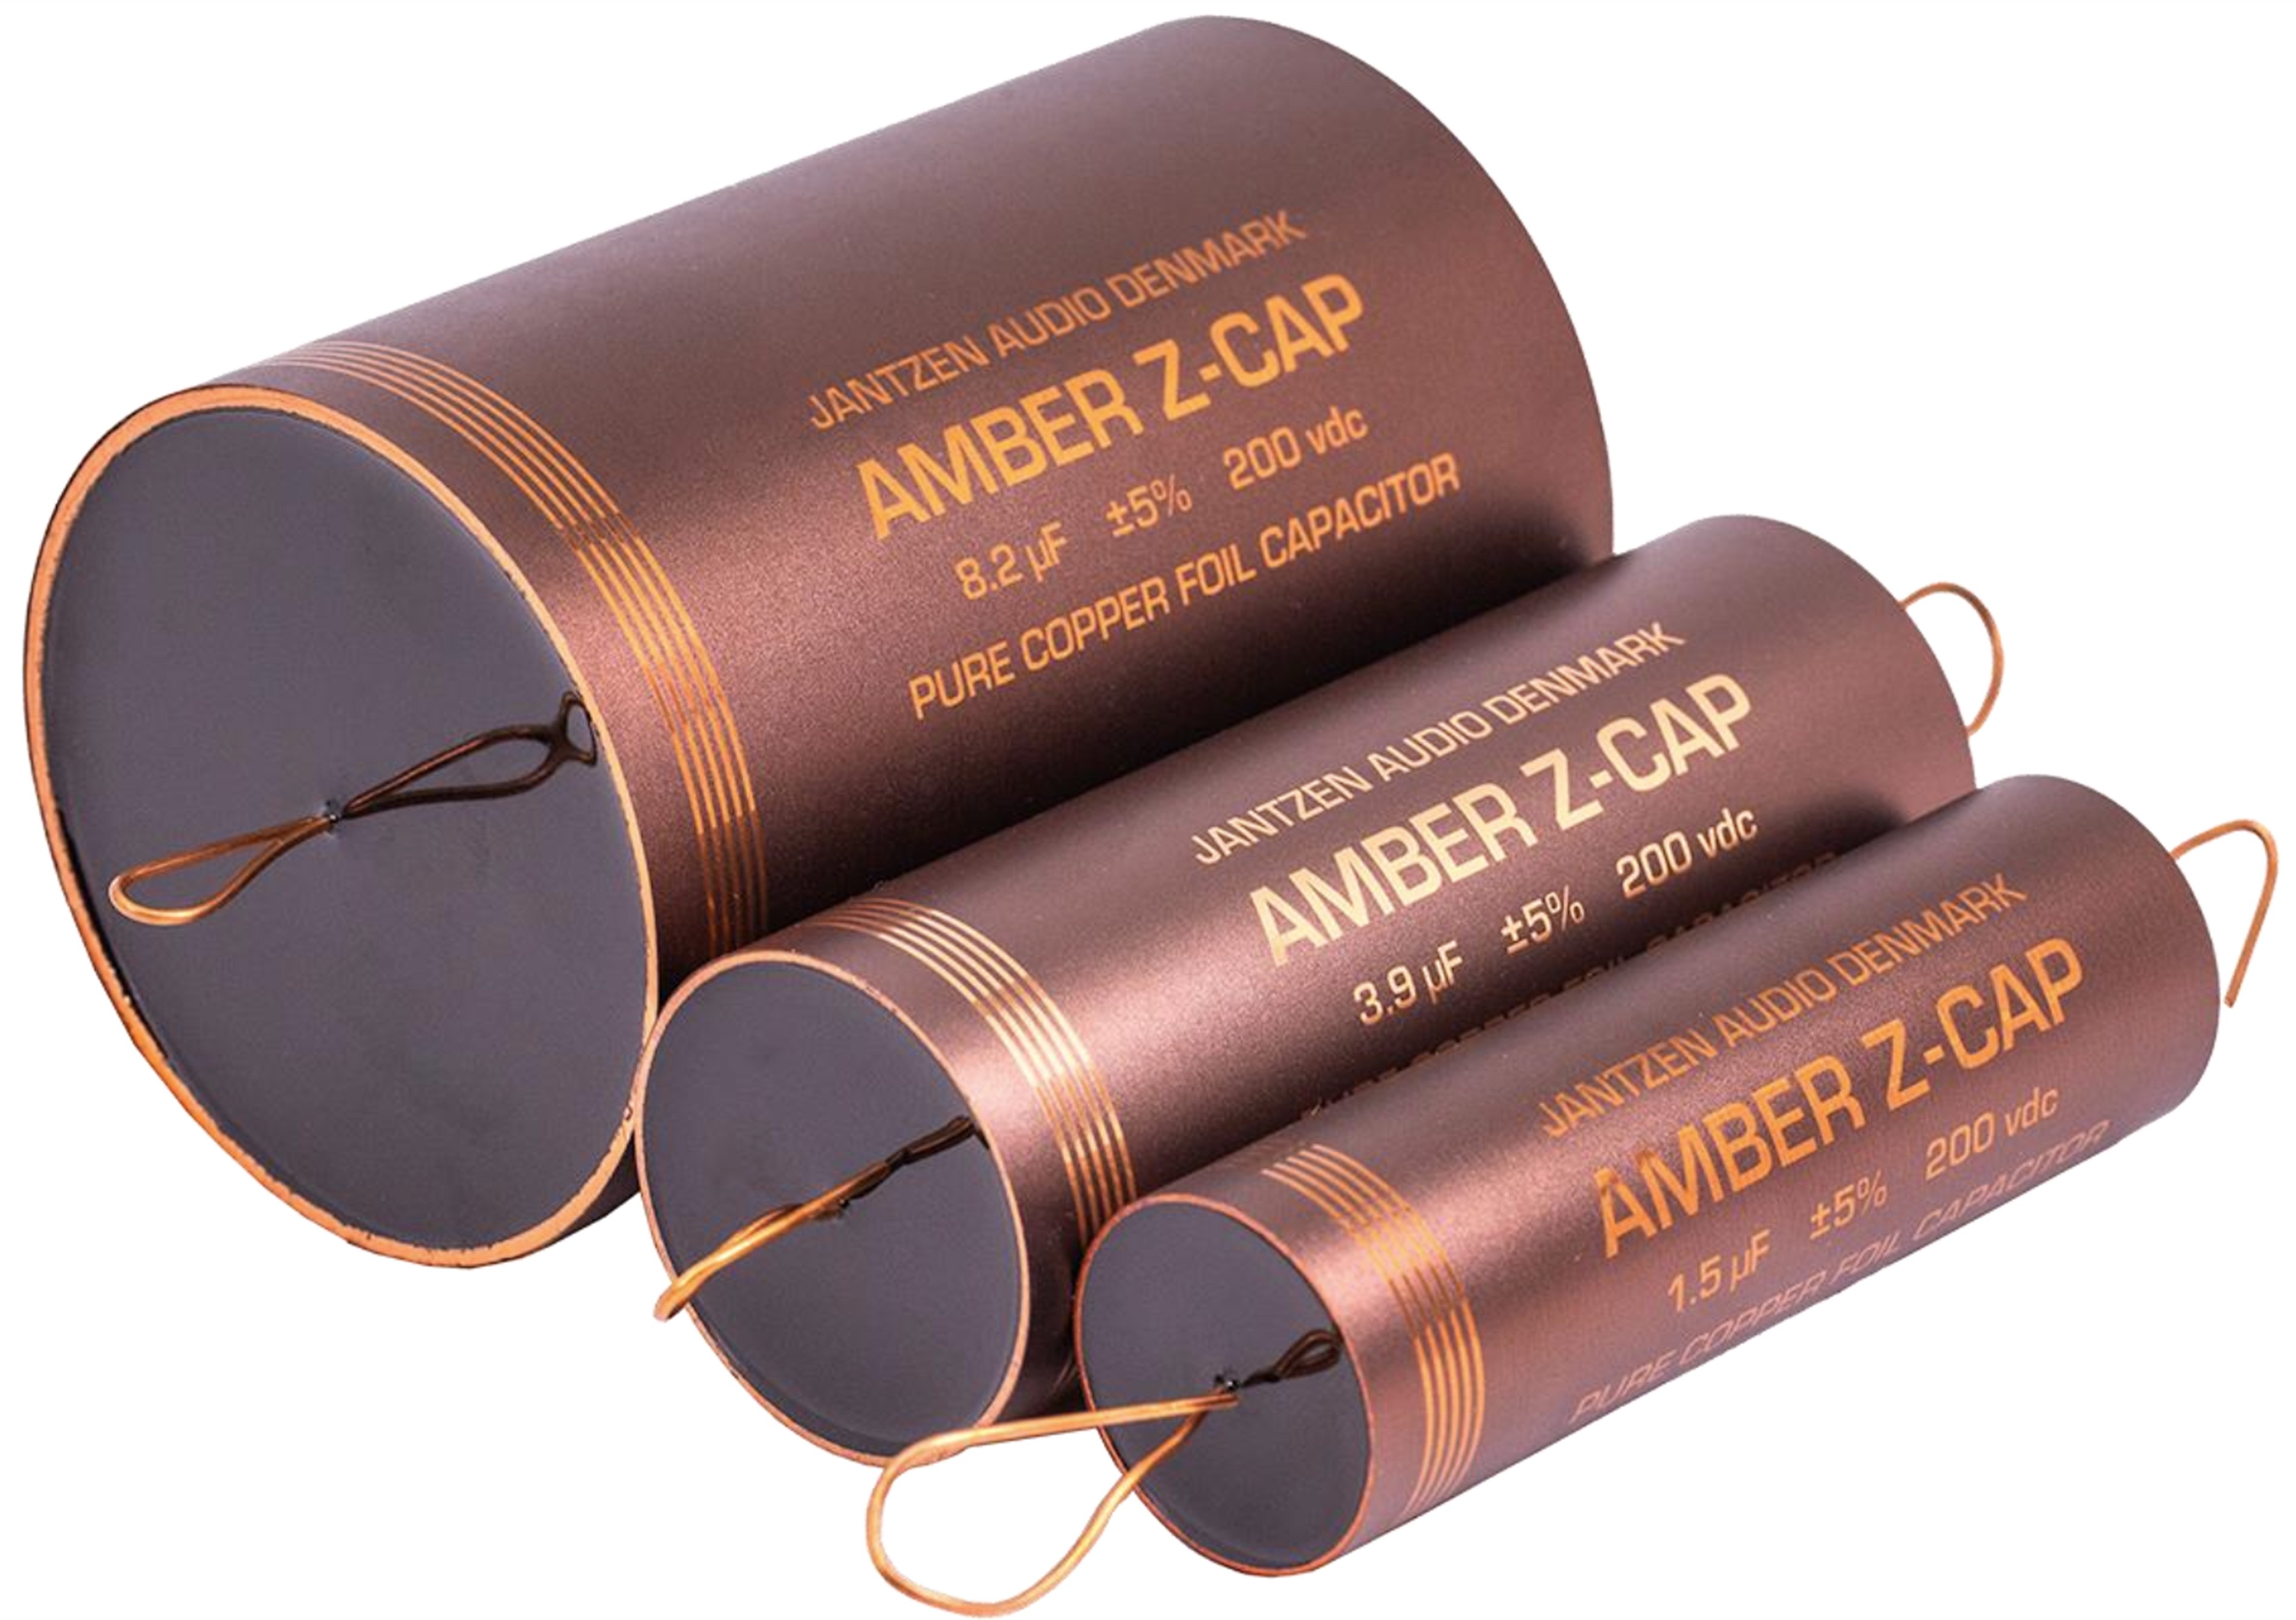 JANTZEN AUDIO AMBER Z-CAP 001-7224 Pure Copper Foil Capacitor Axial 200V 1.5µF